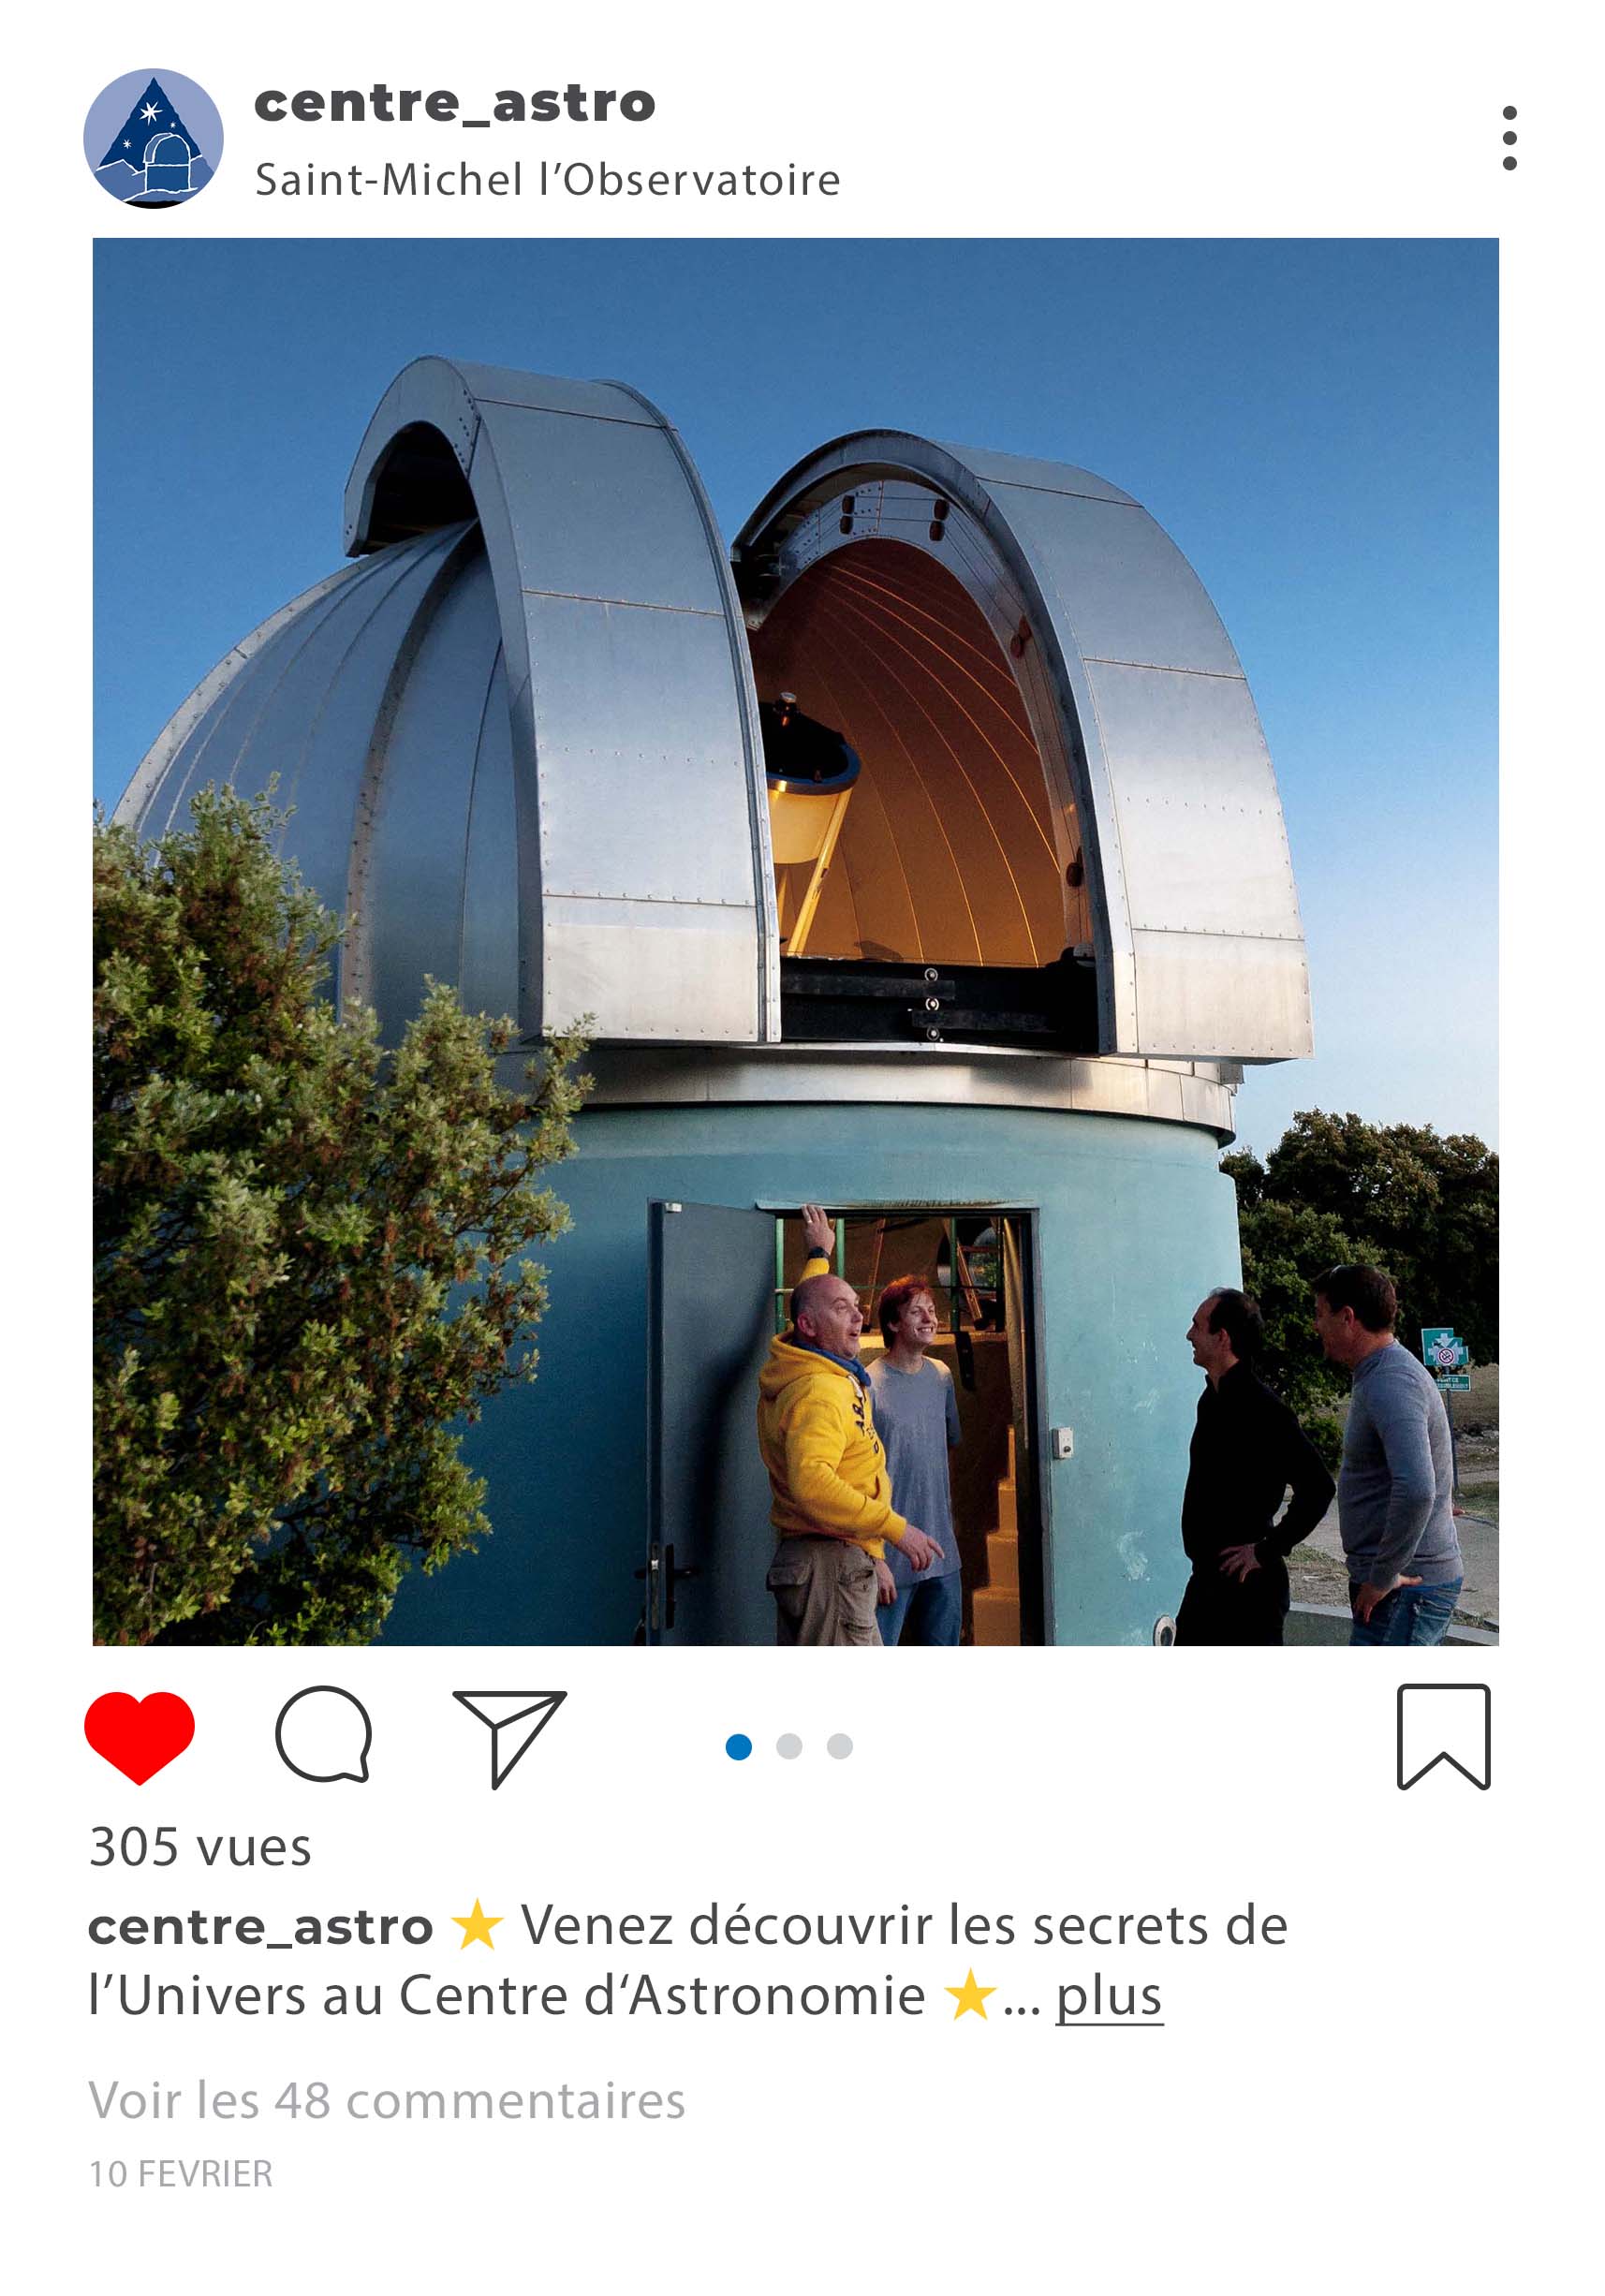 Le Centre d'Astronomie de Saint-Michel l'Observatoire vous accueille dans la coupole qui abrite le T600